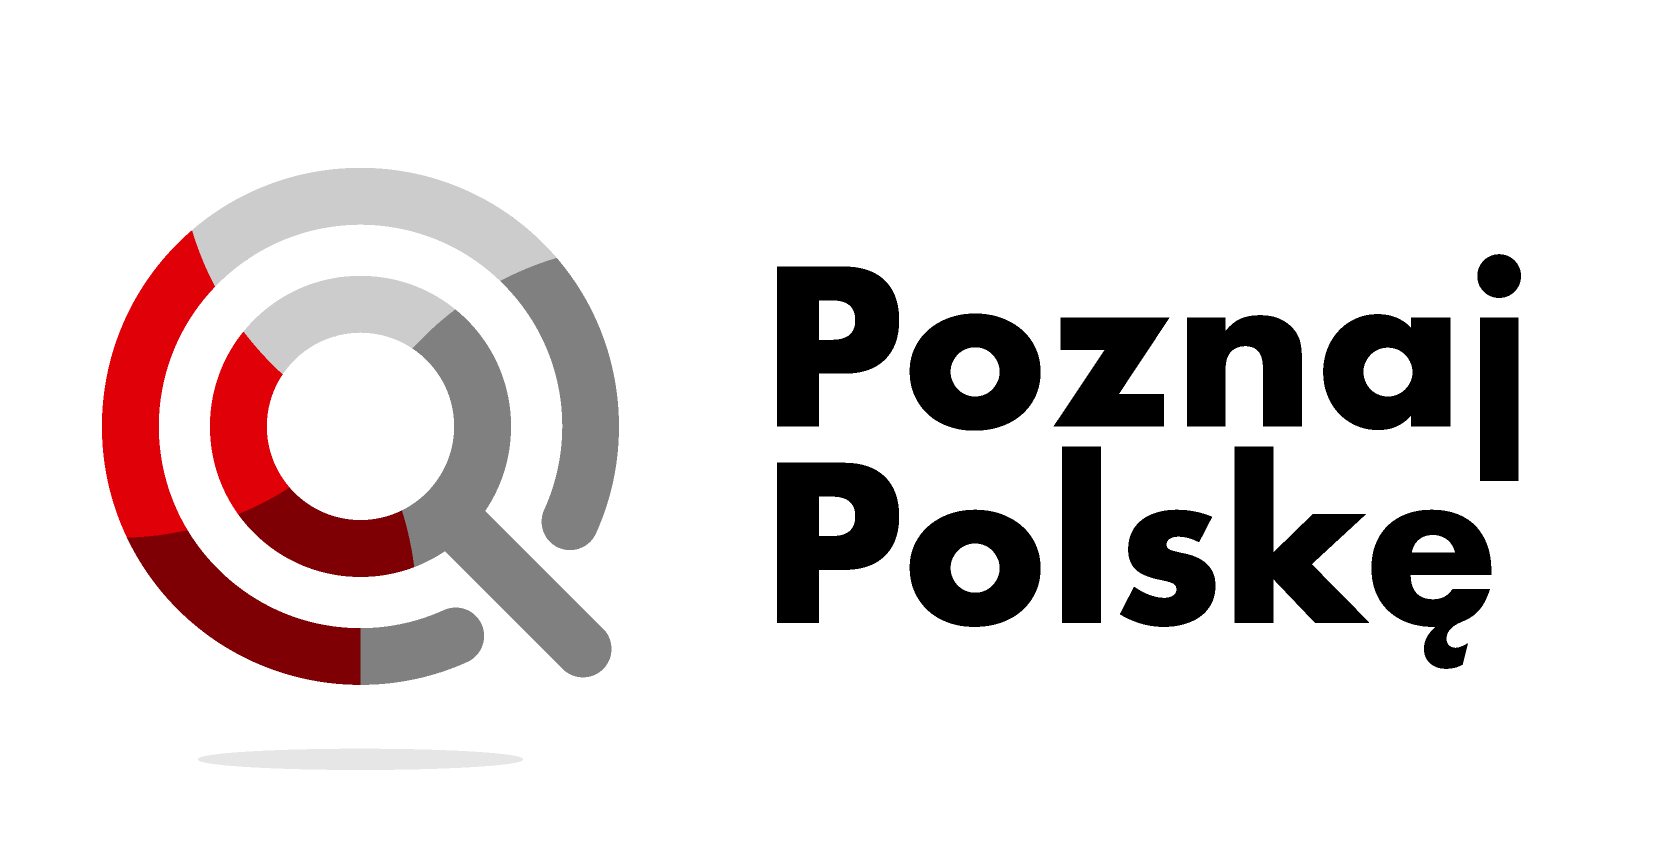 logo poznaj polske